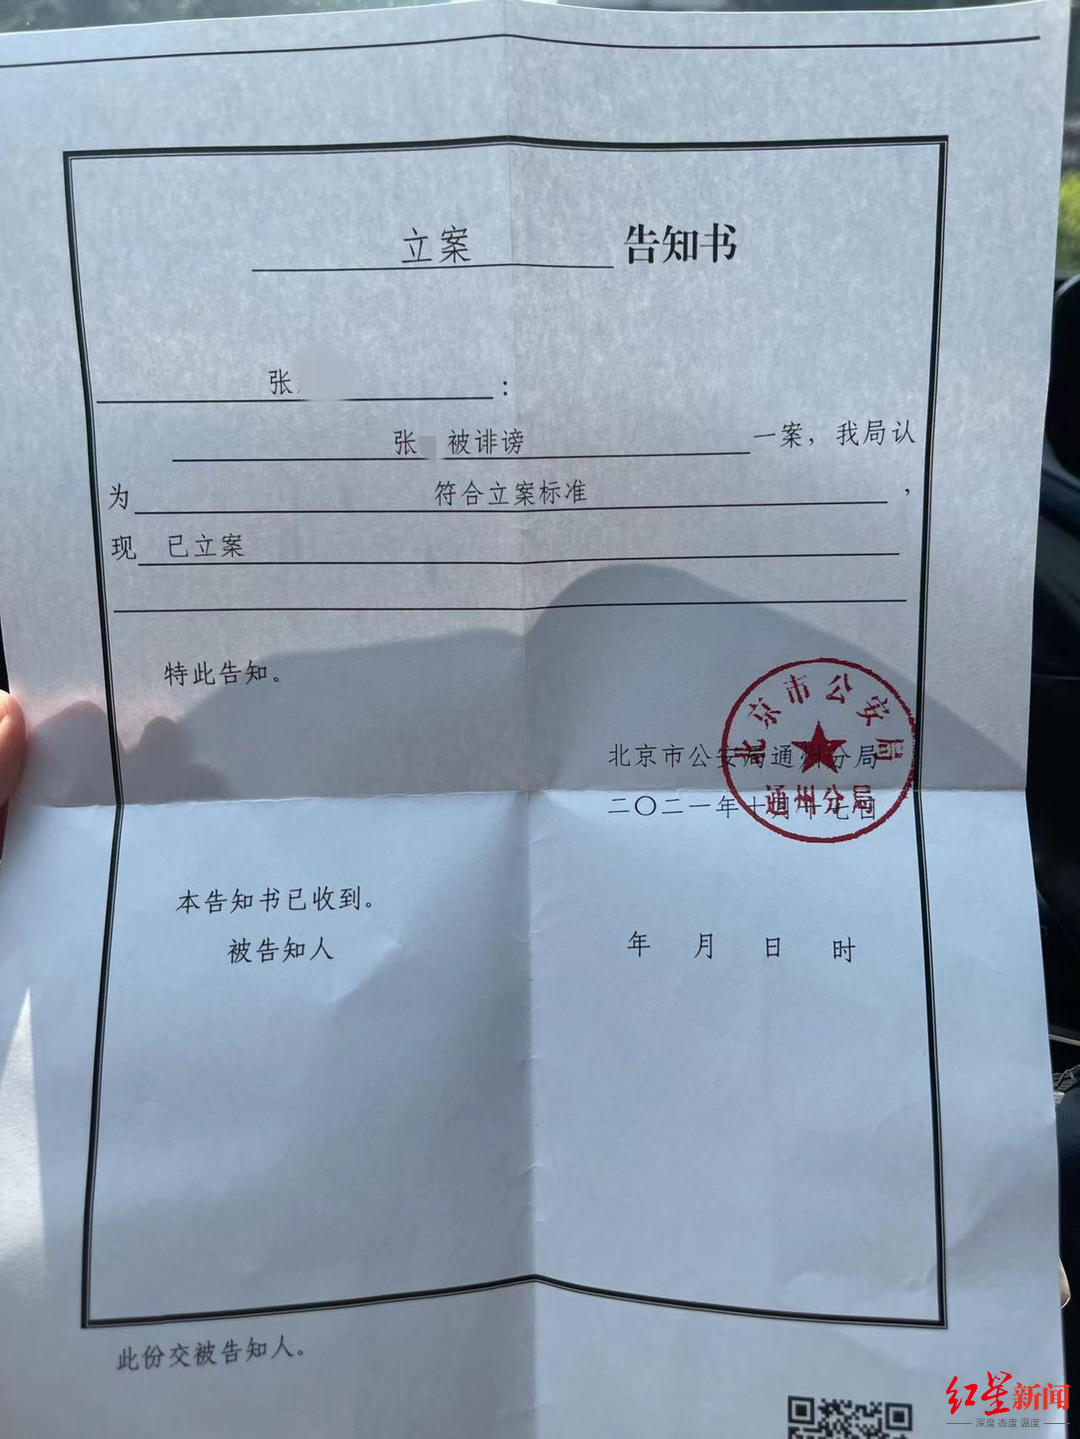 2021年10月17日,北京市公安局通州分局出具的立案告知书对于公安